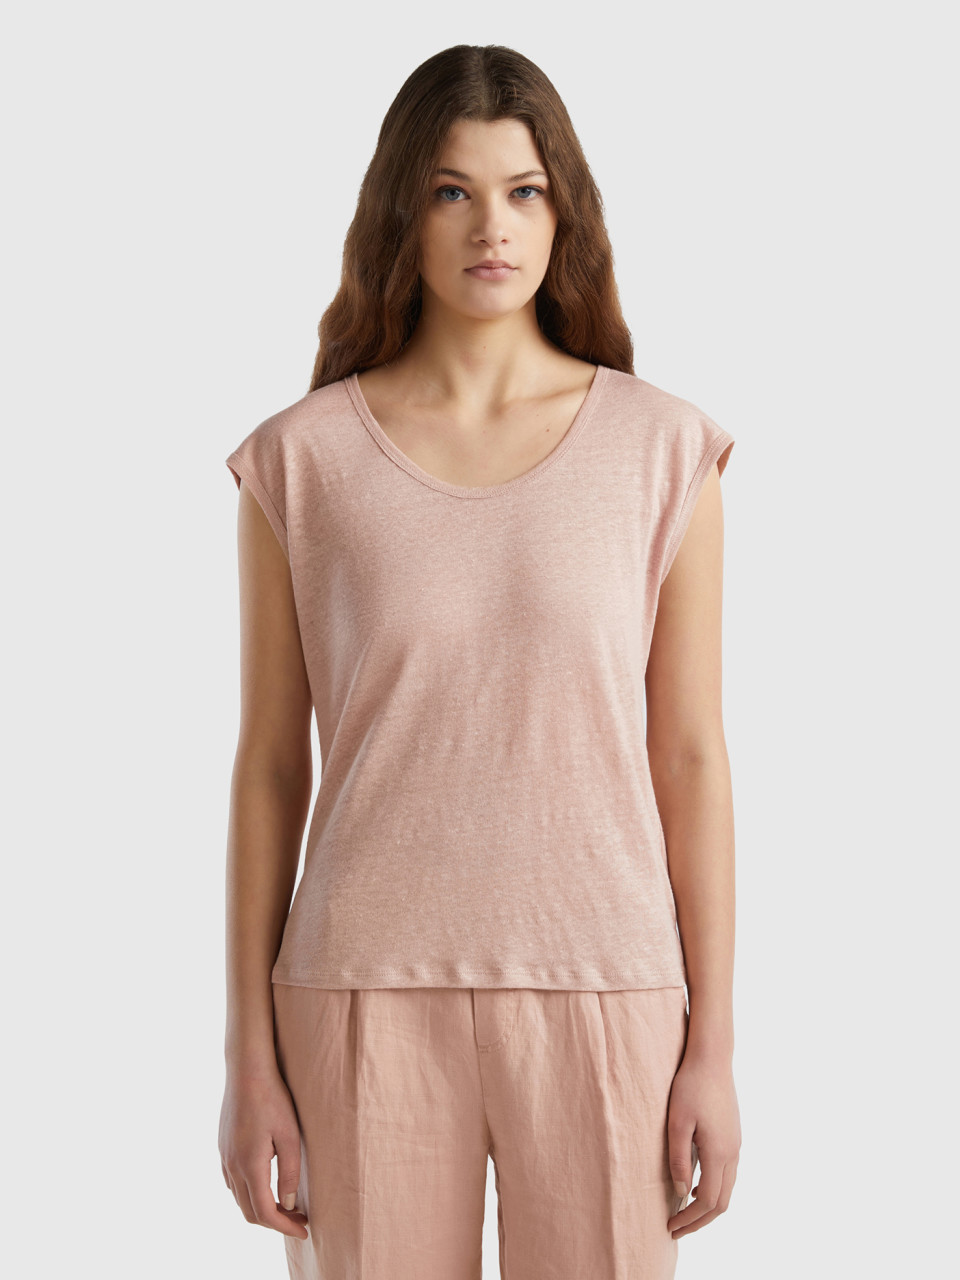 Benetton, Wide Neck T-shirt In Pure Linen, Soft Pink, Women